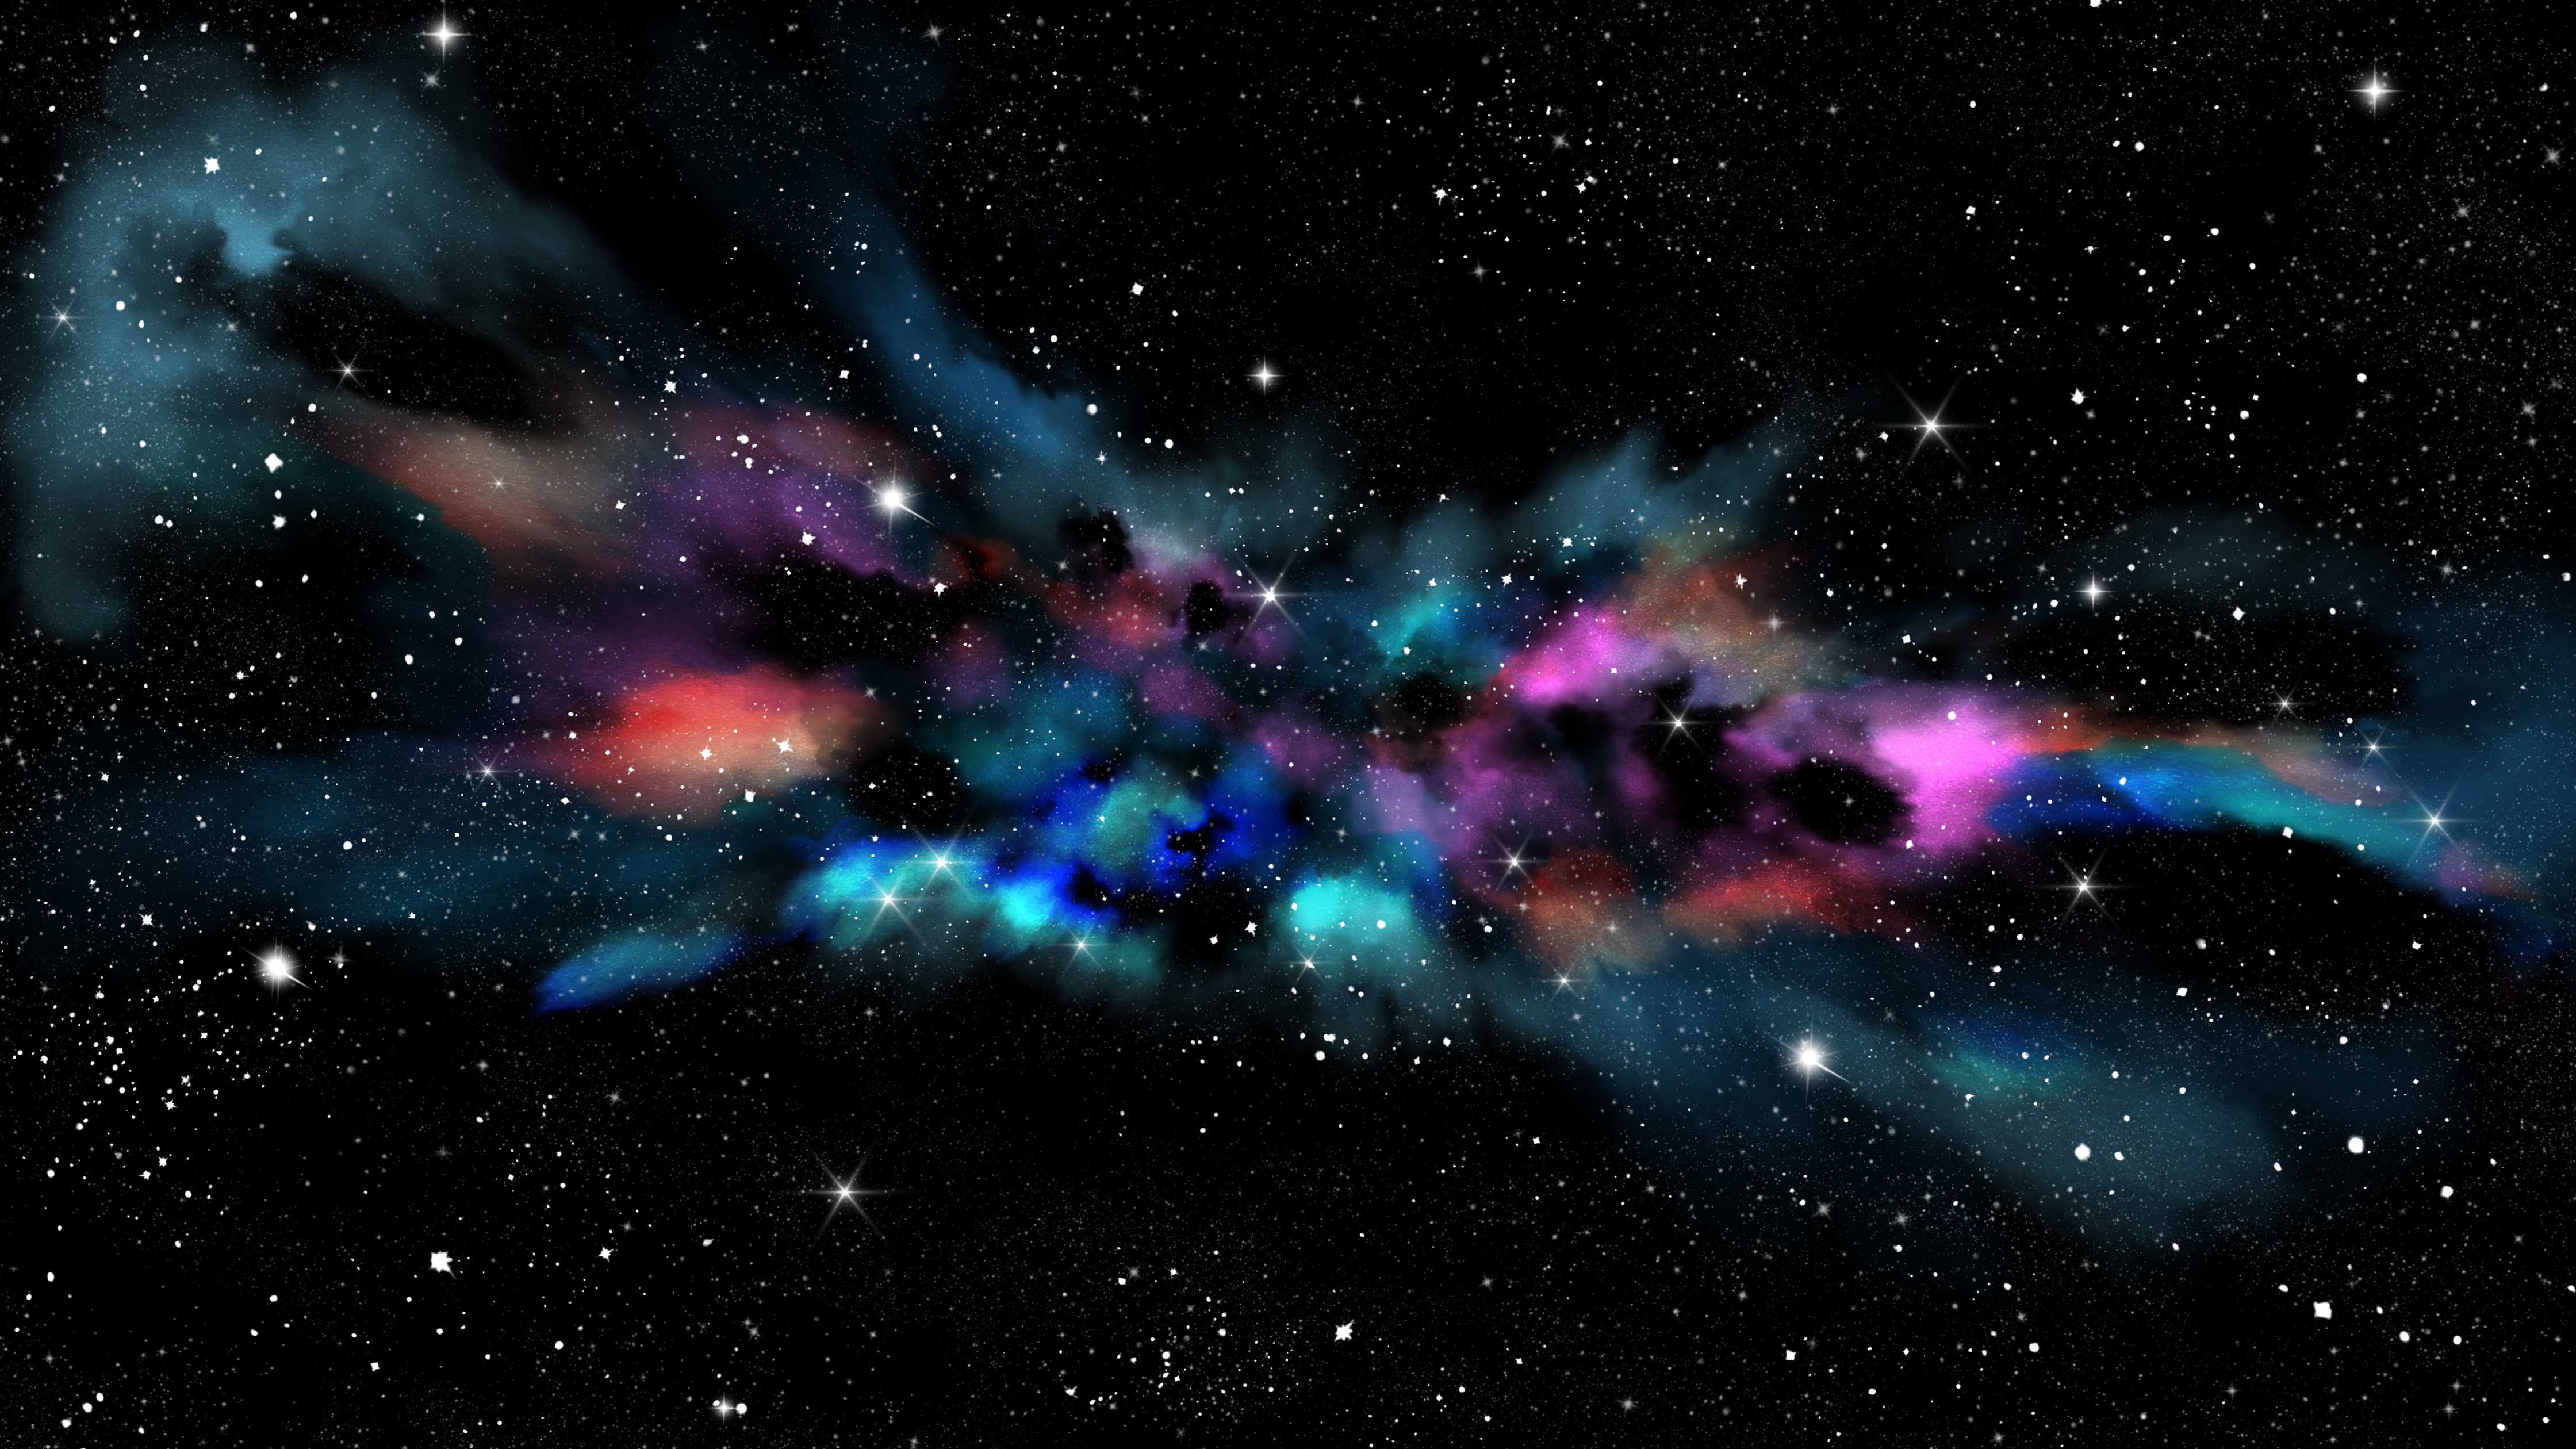 desktop backgrounds space nebula